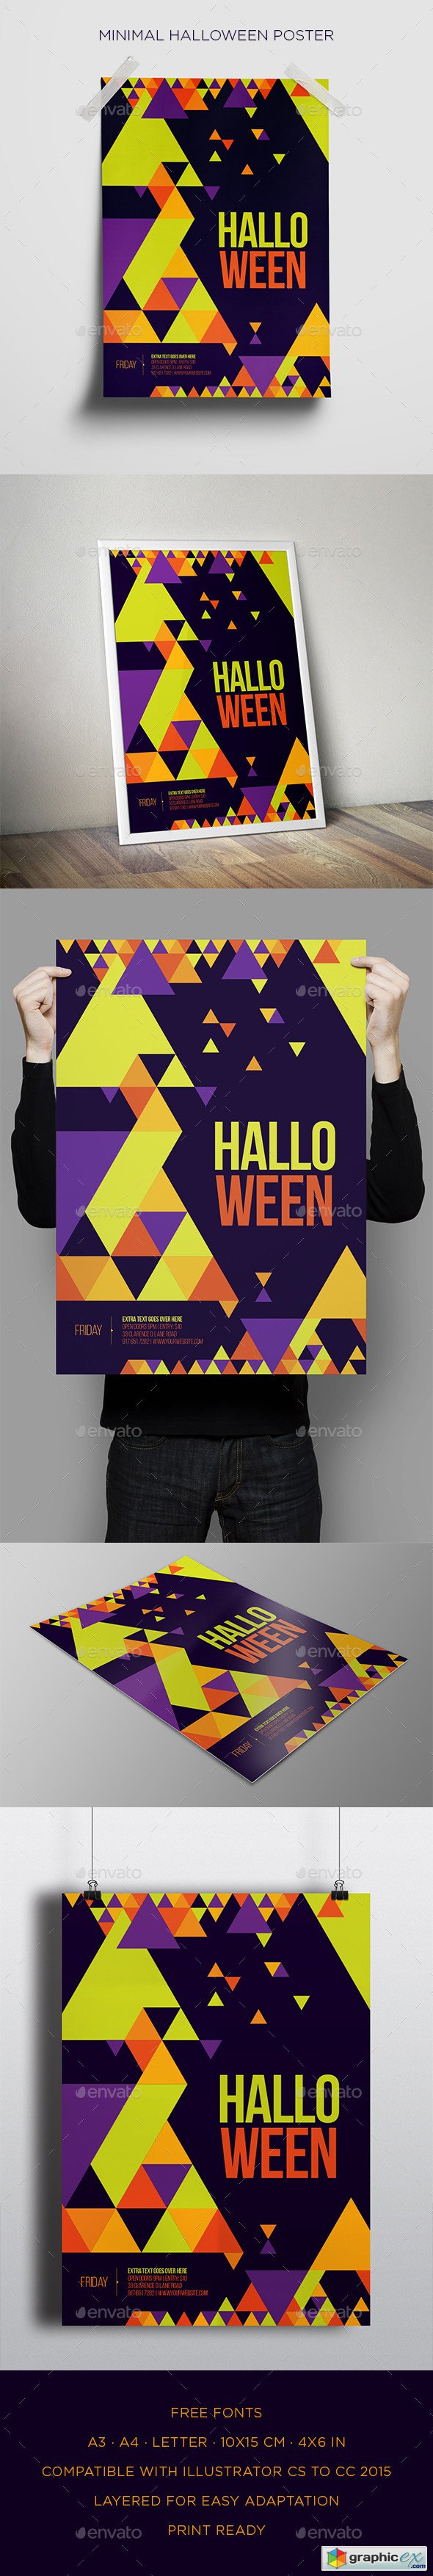 Minimal Halloween Poster